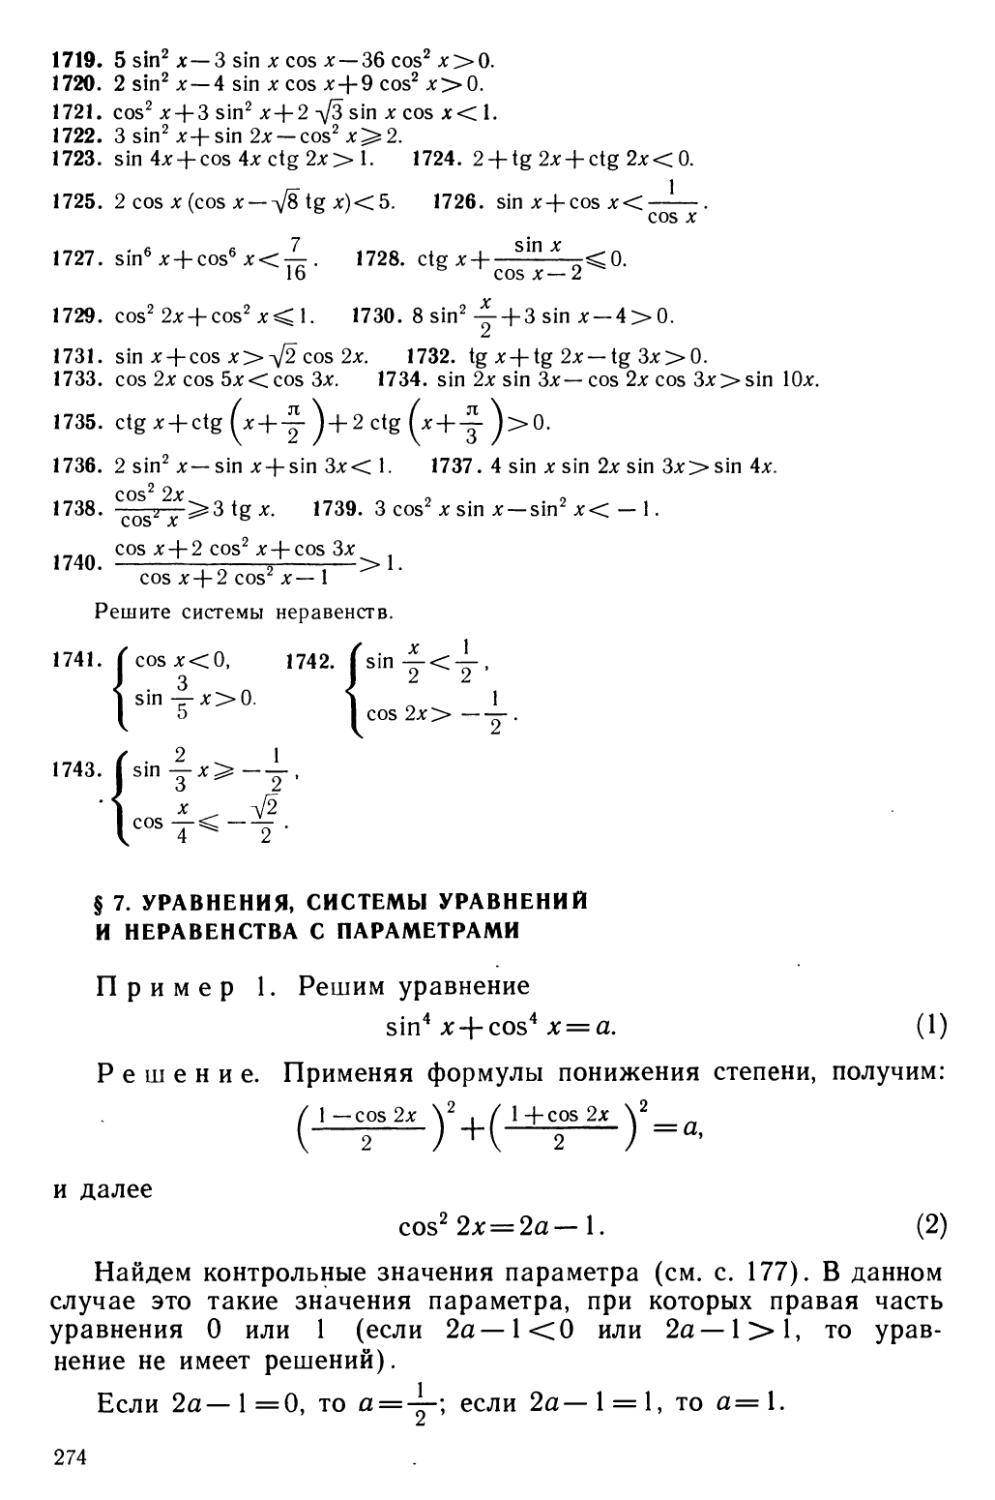 § 7 Уравнения, системы уравнений и неравенства с параметрами